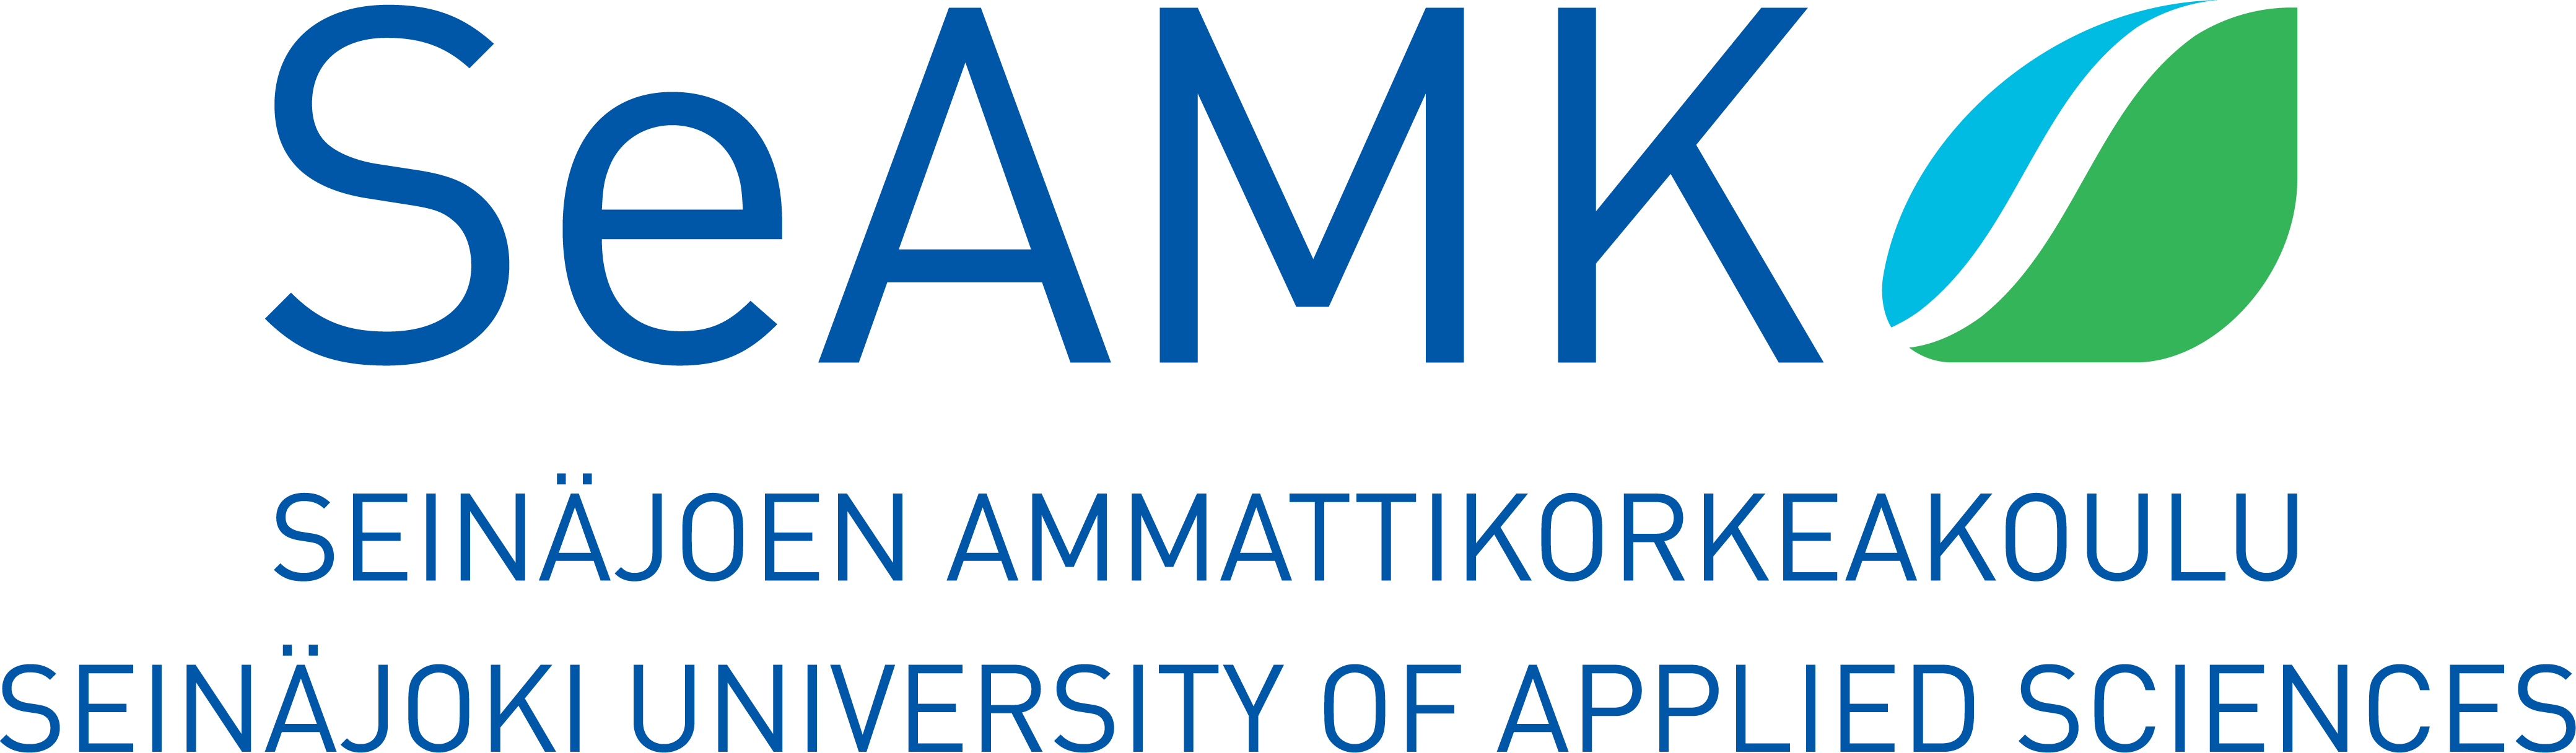 seamk logo 4vari